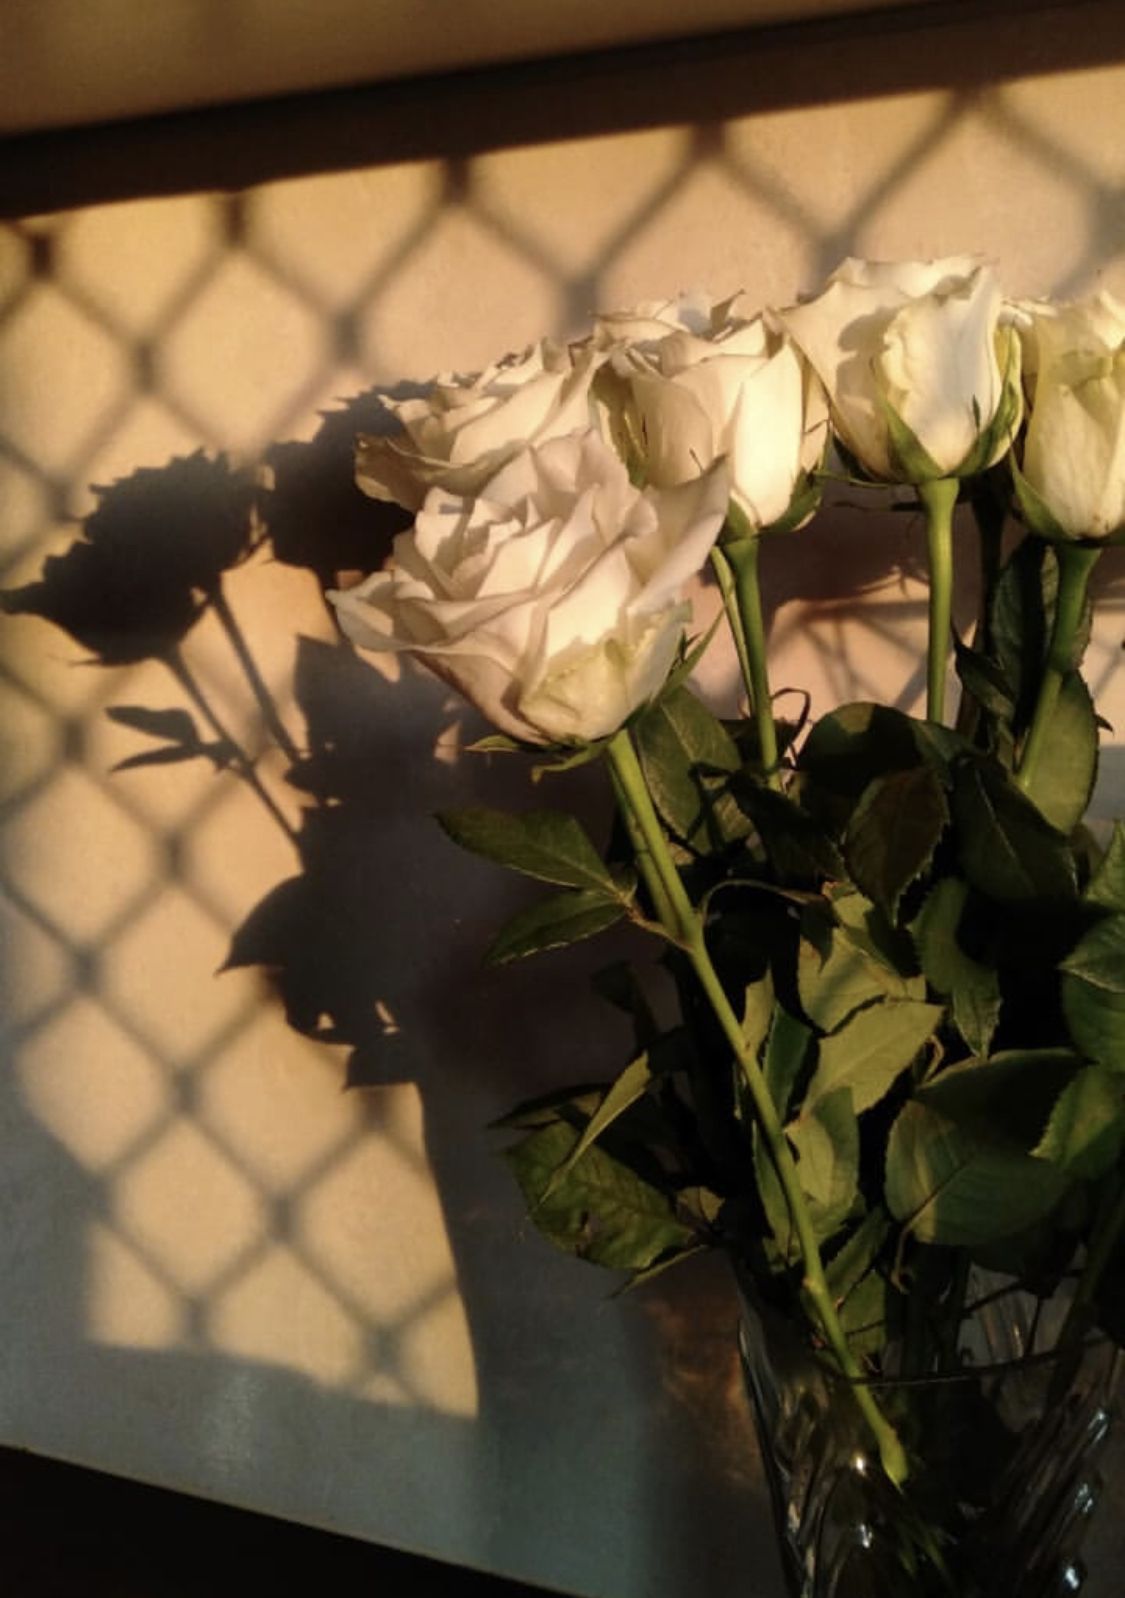  Weiße Rosen Hintergrundbild 1125x1598. Aesthetic White Roses. Rosen hintergrundbilder, Blumen hintergrund, Blumen hintergrund iphone